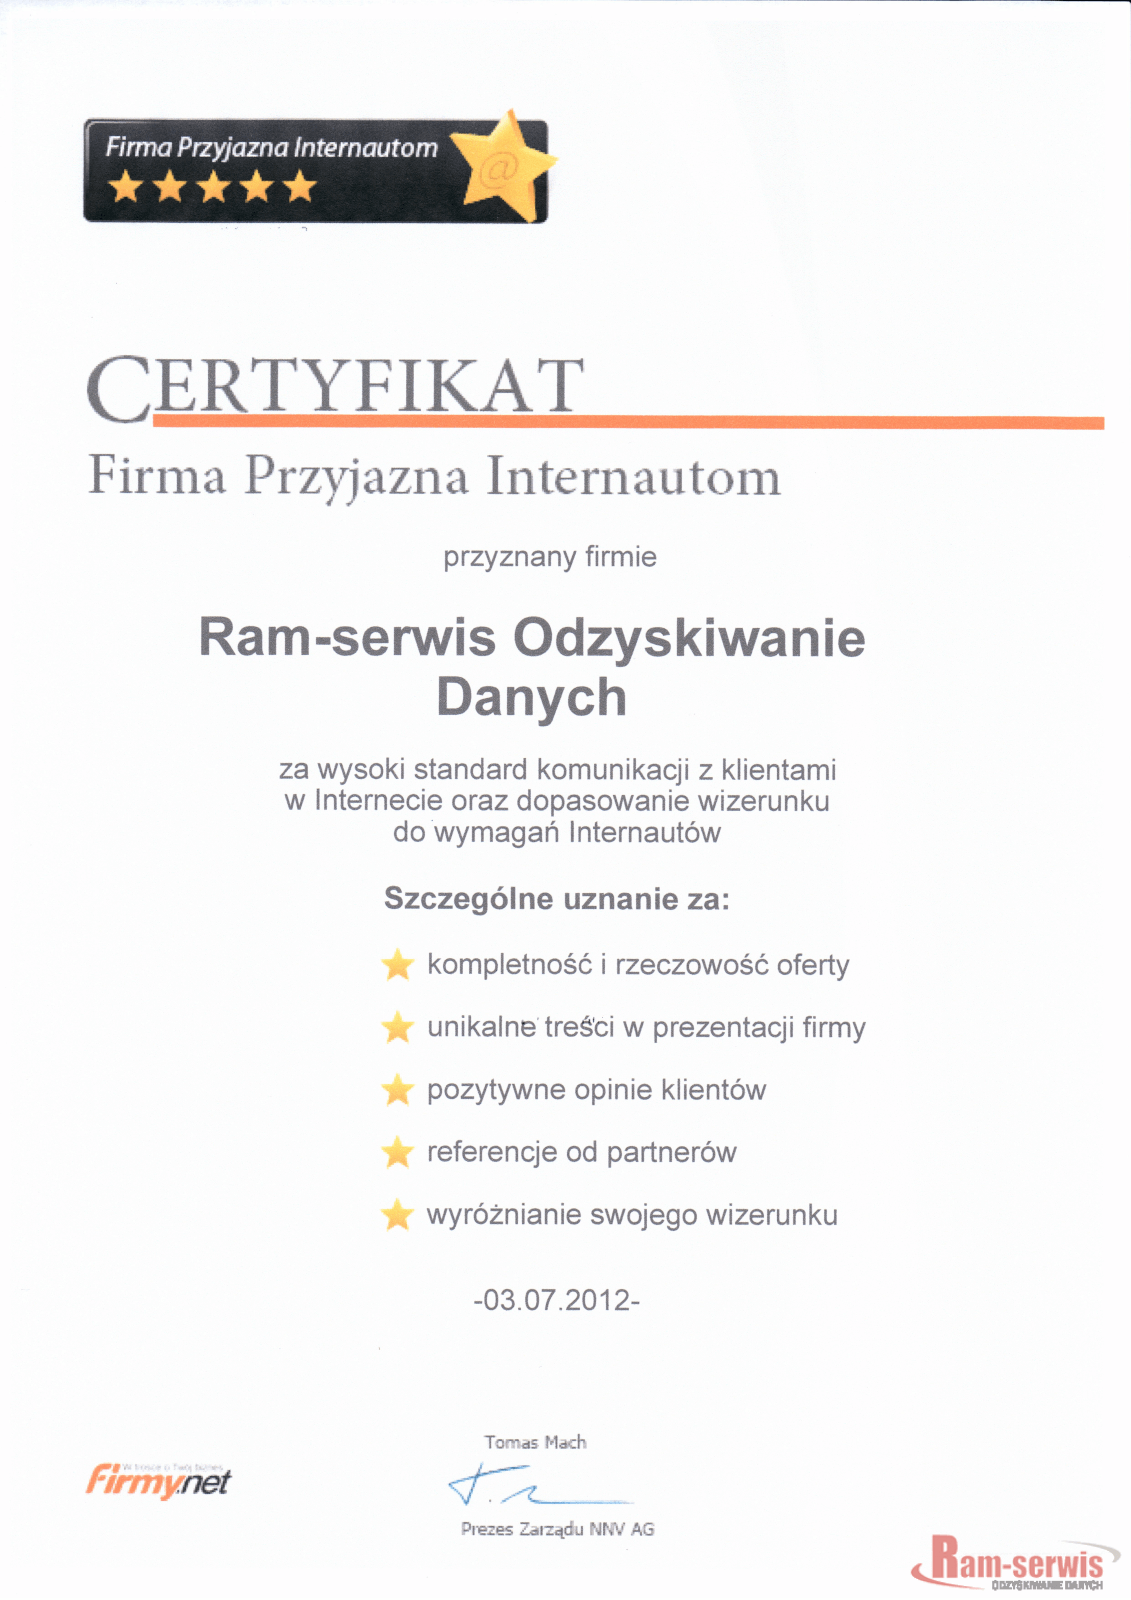 Certyfikat "Firma Przyjazna Internautom"